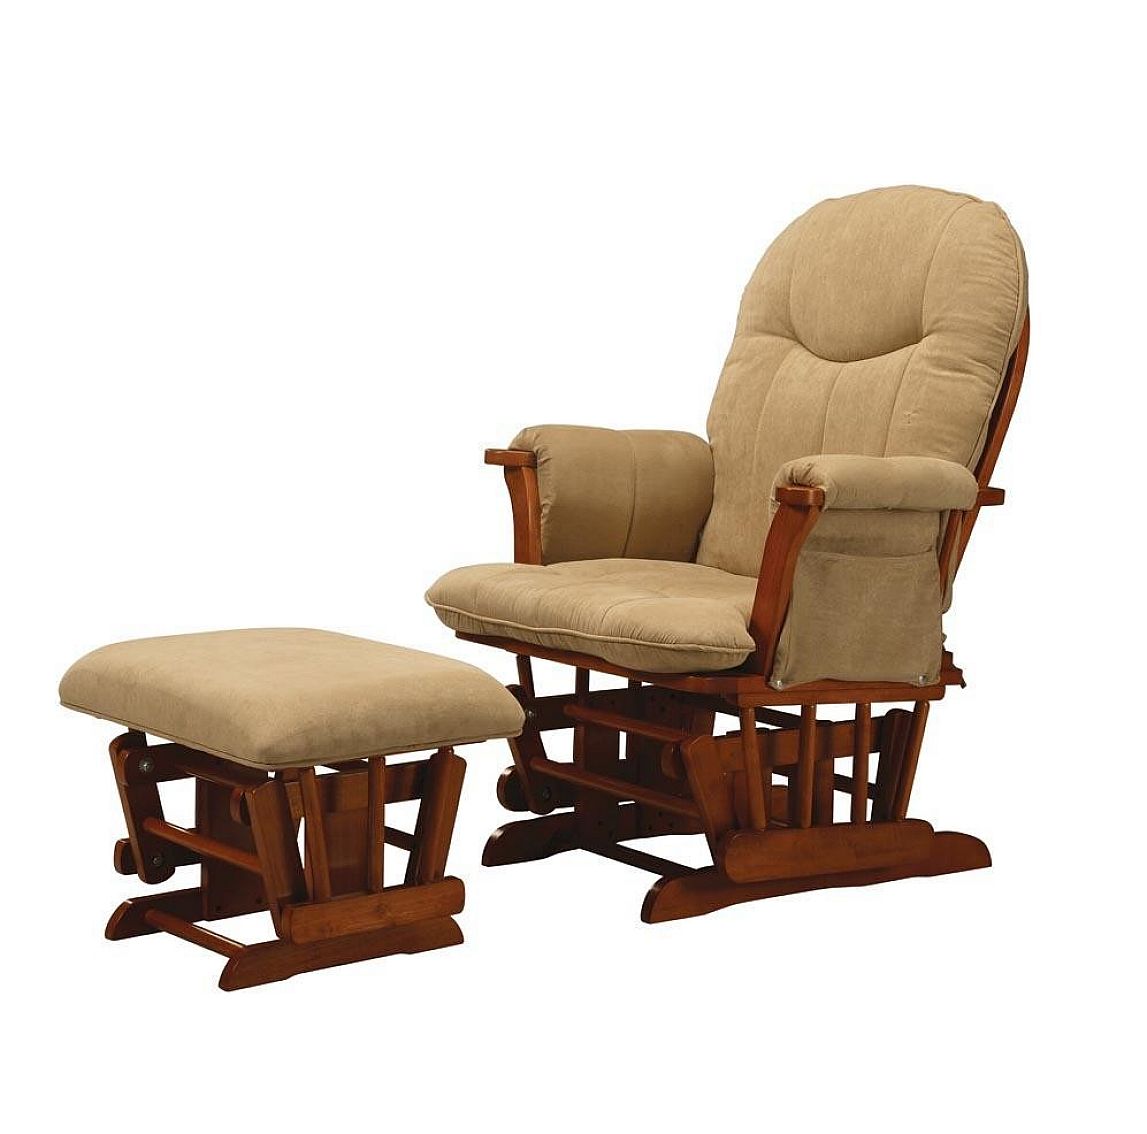 Rocking Chair Cushion Sets - Decor Ideas